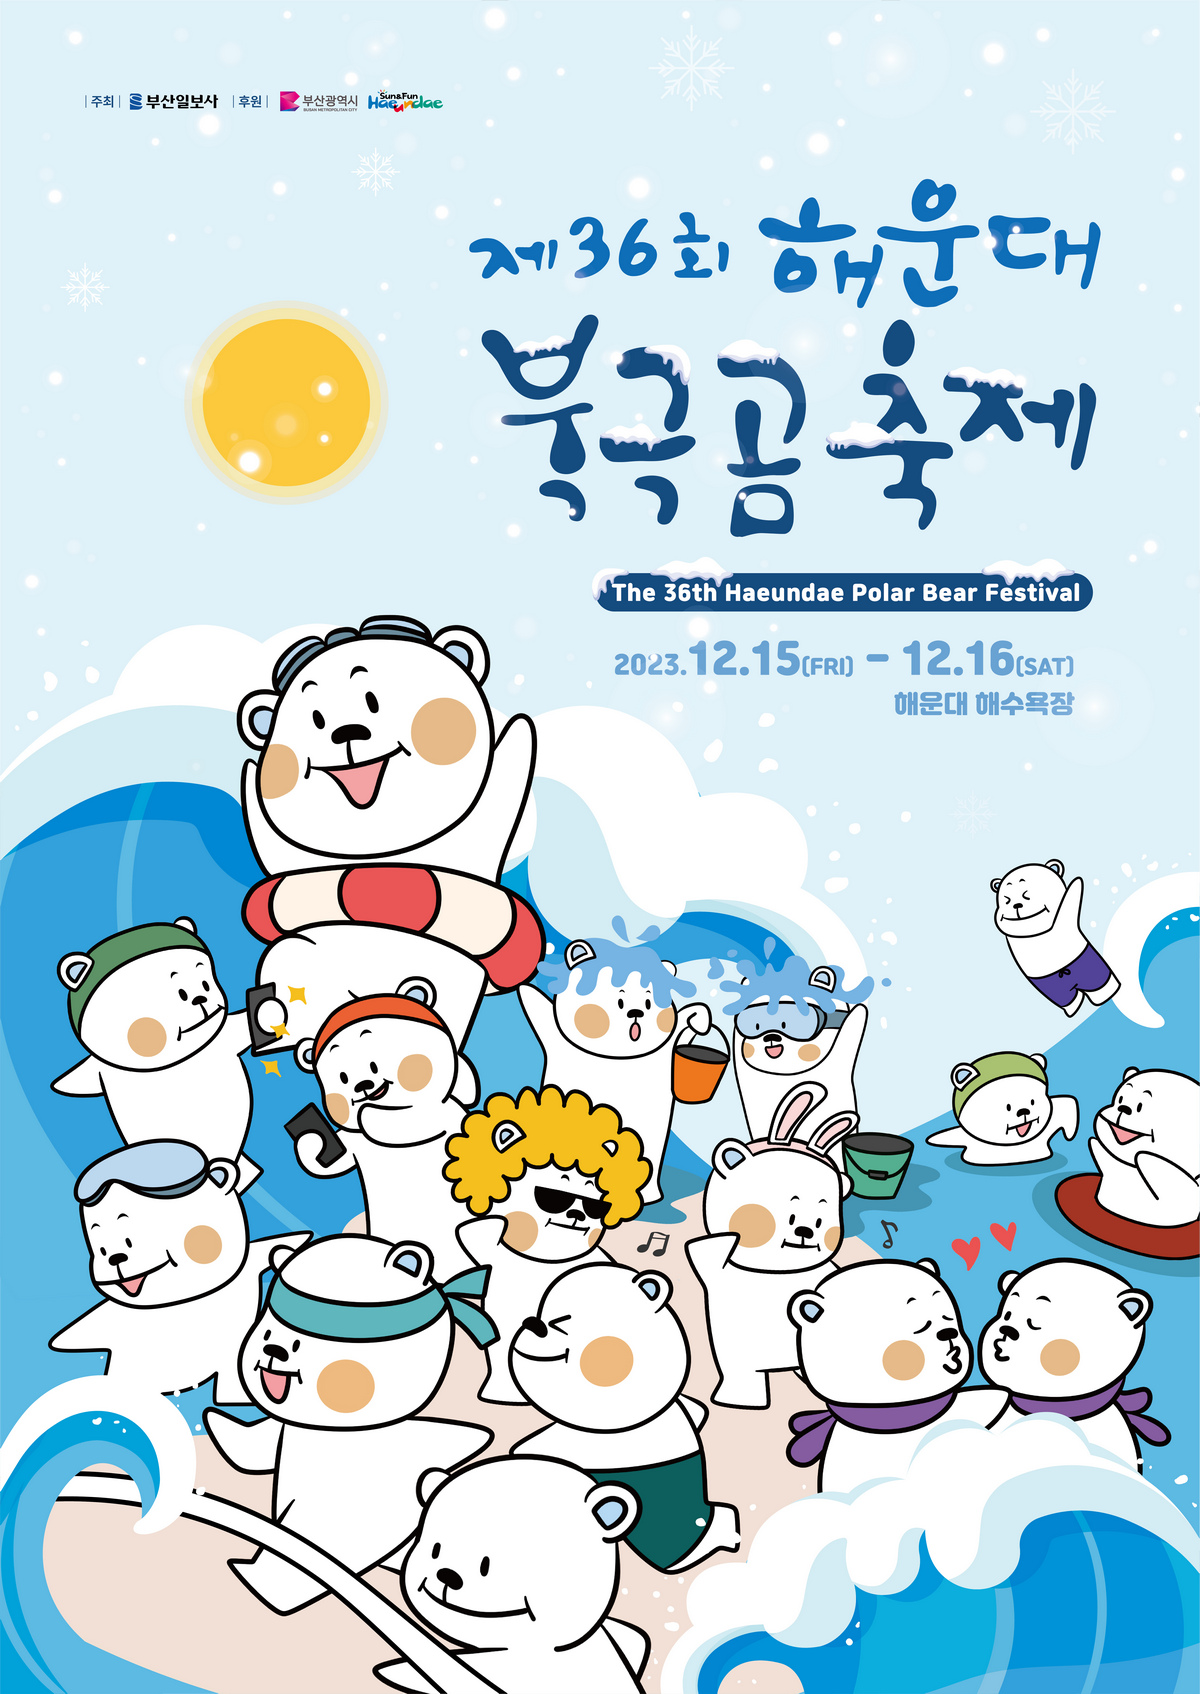 The 36th Haeundae Polar Bear Festival